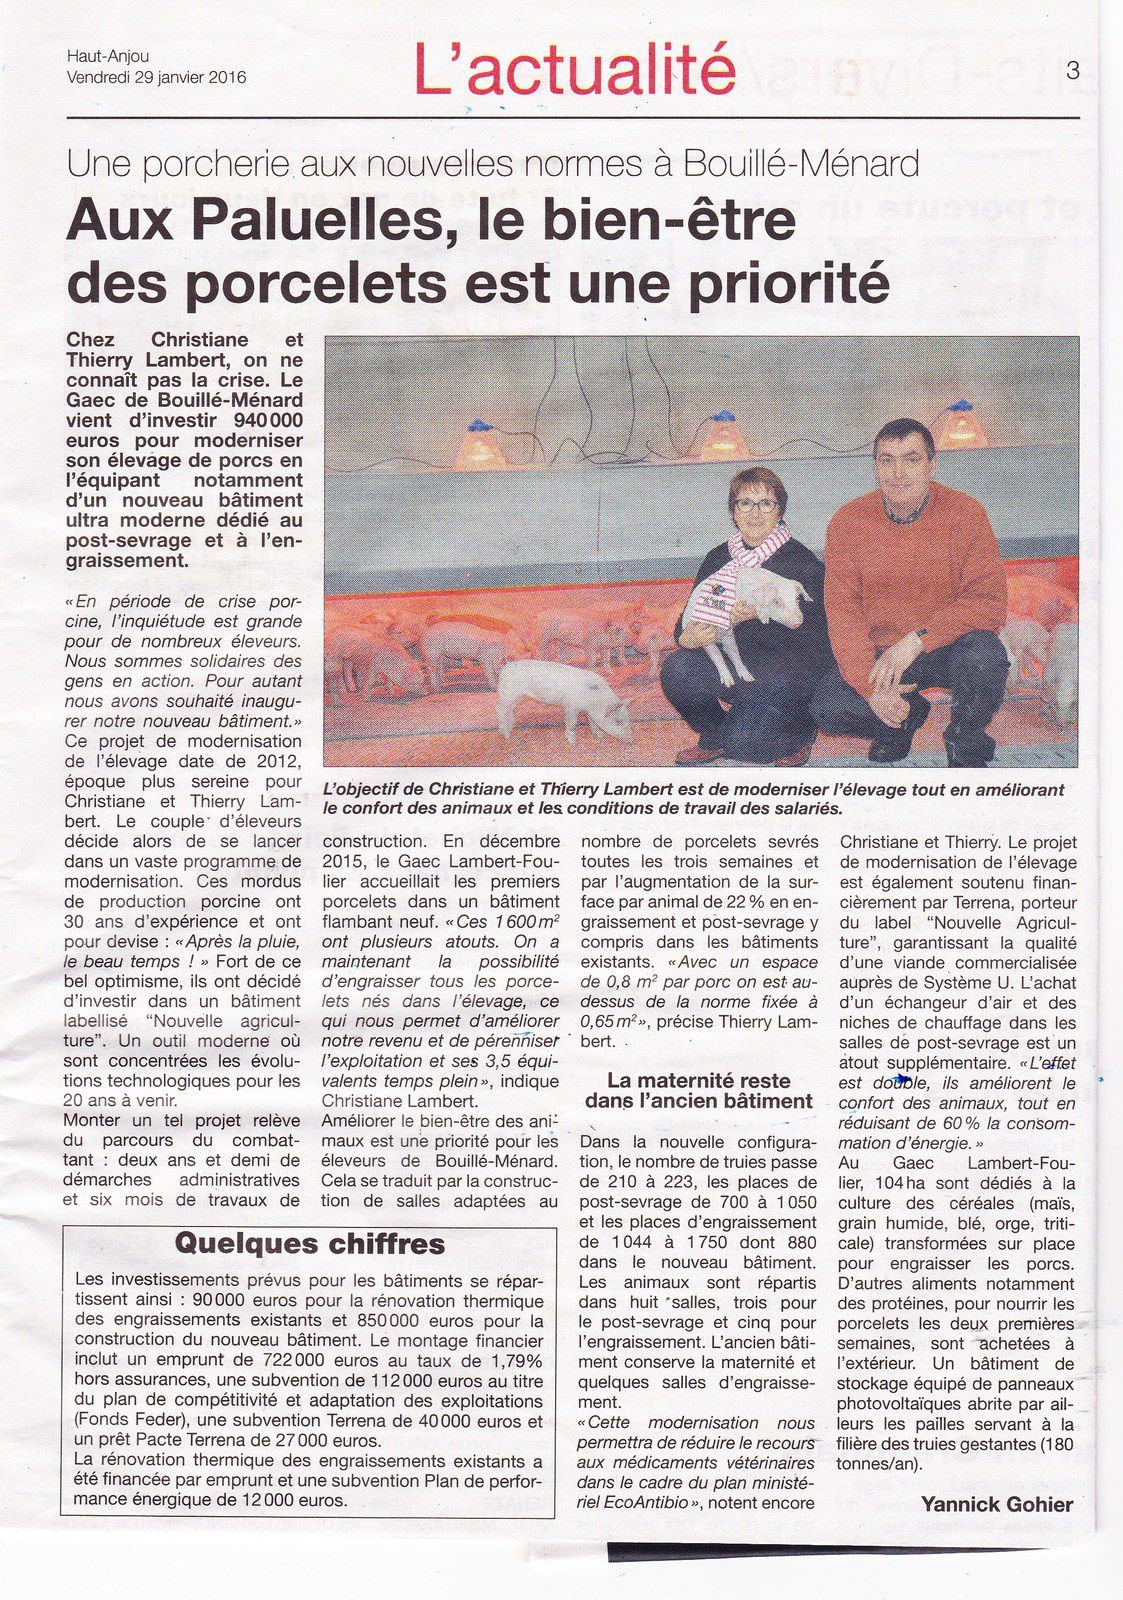 Chemaze: Le Haut Anjou cite en exemple un élevage industriel de Porcs - le  blog vivreachemaze par : L. Desamaison